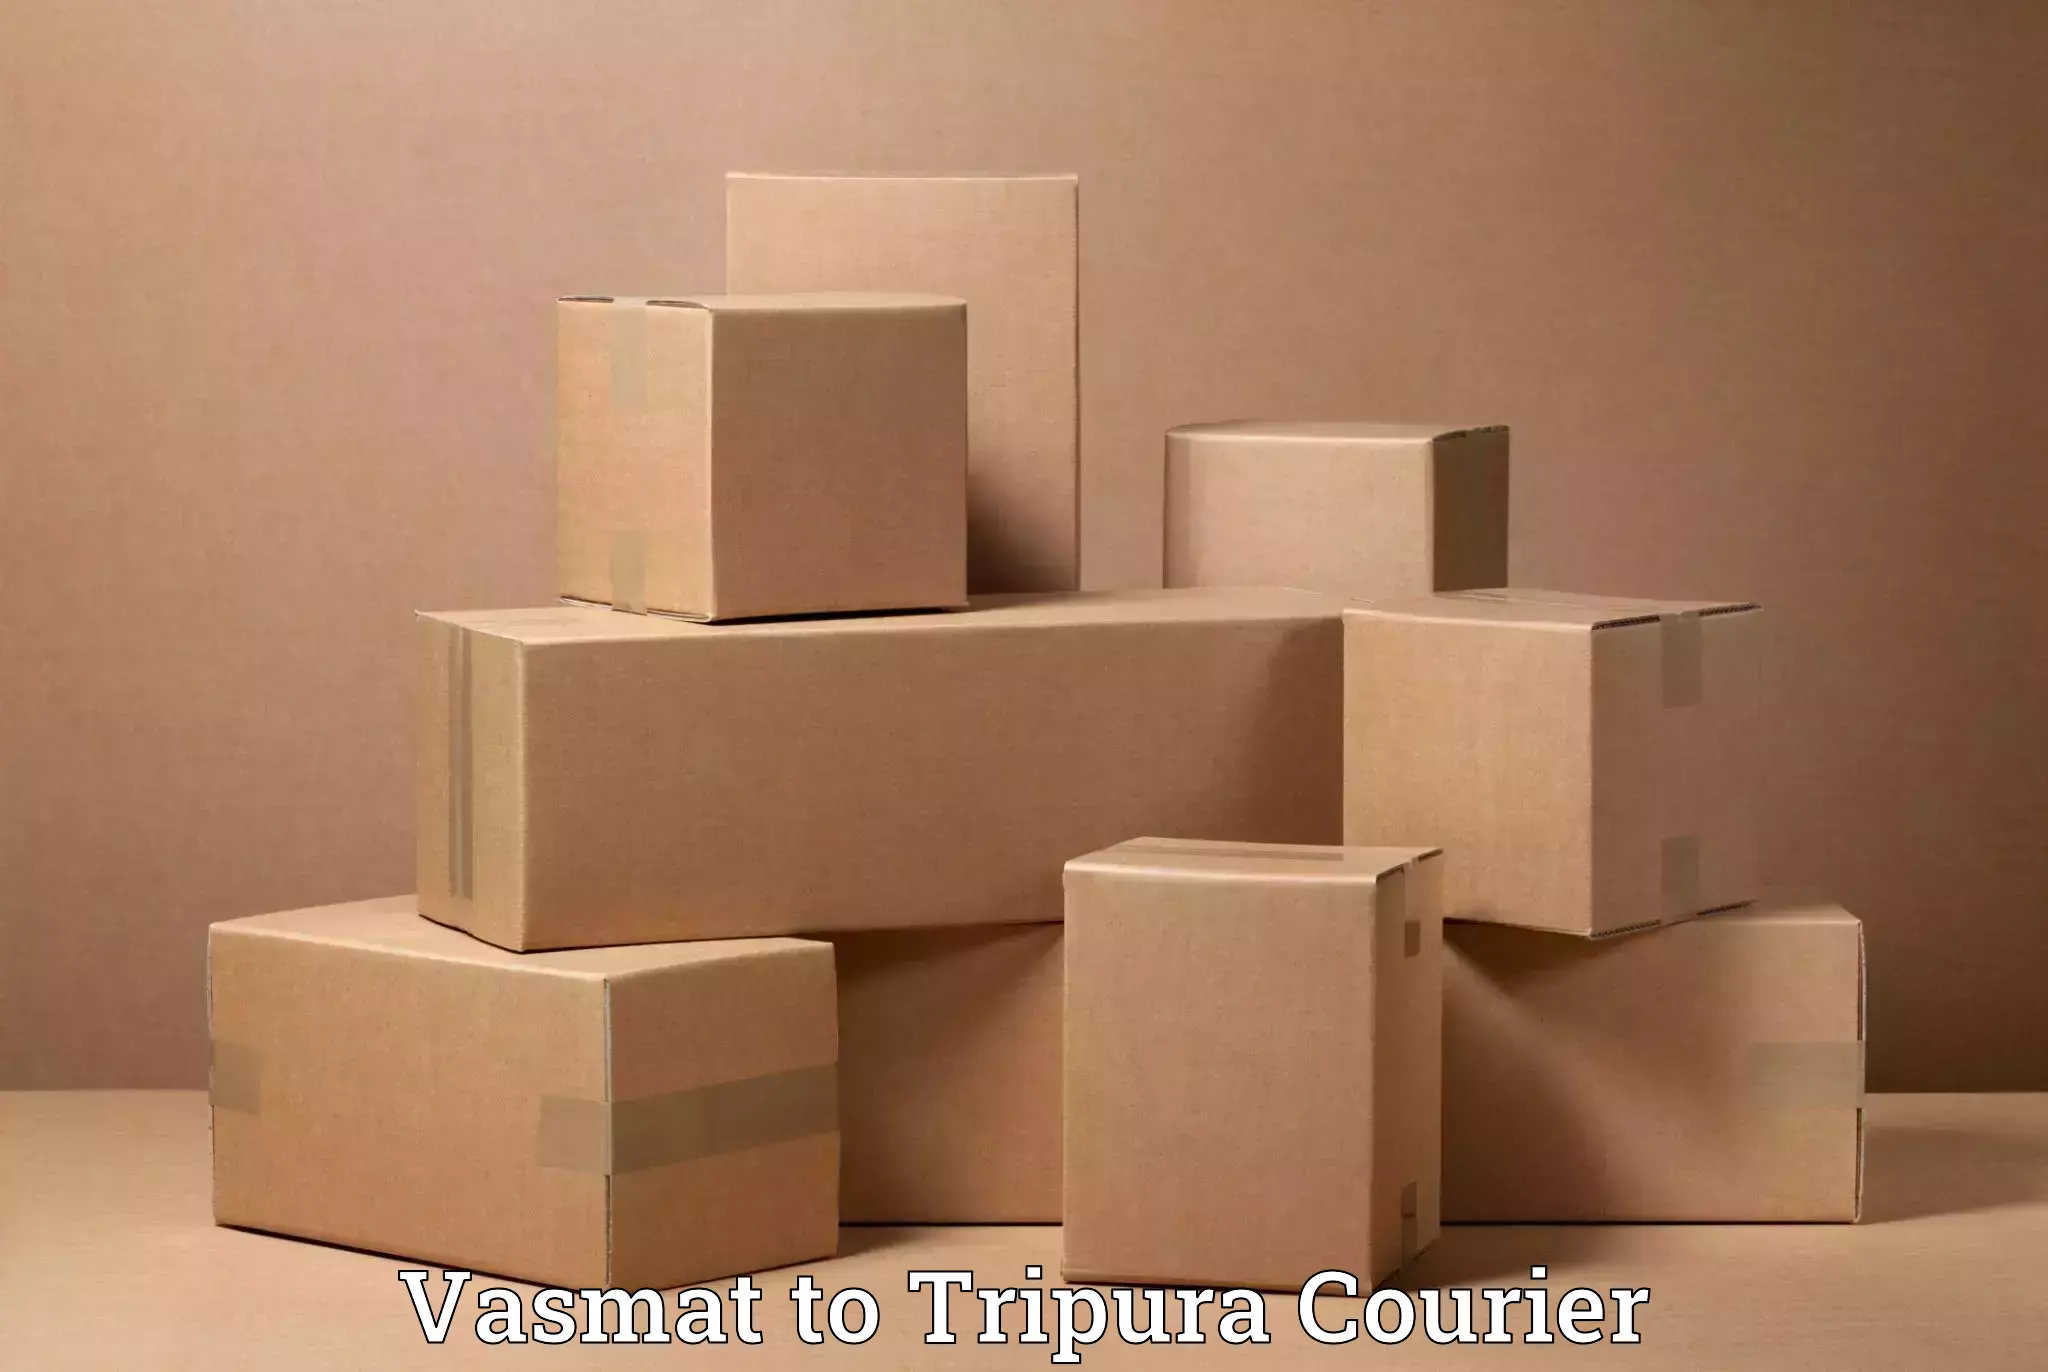 Full-service household moving in Vasmat to Udaipur Tripura